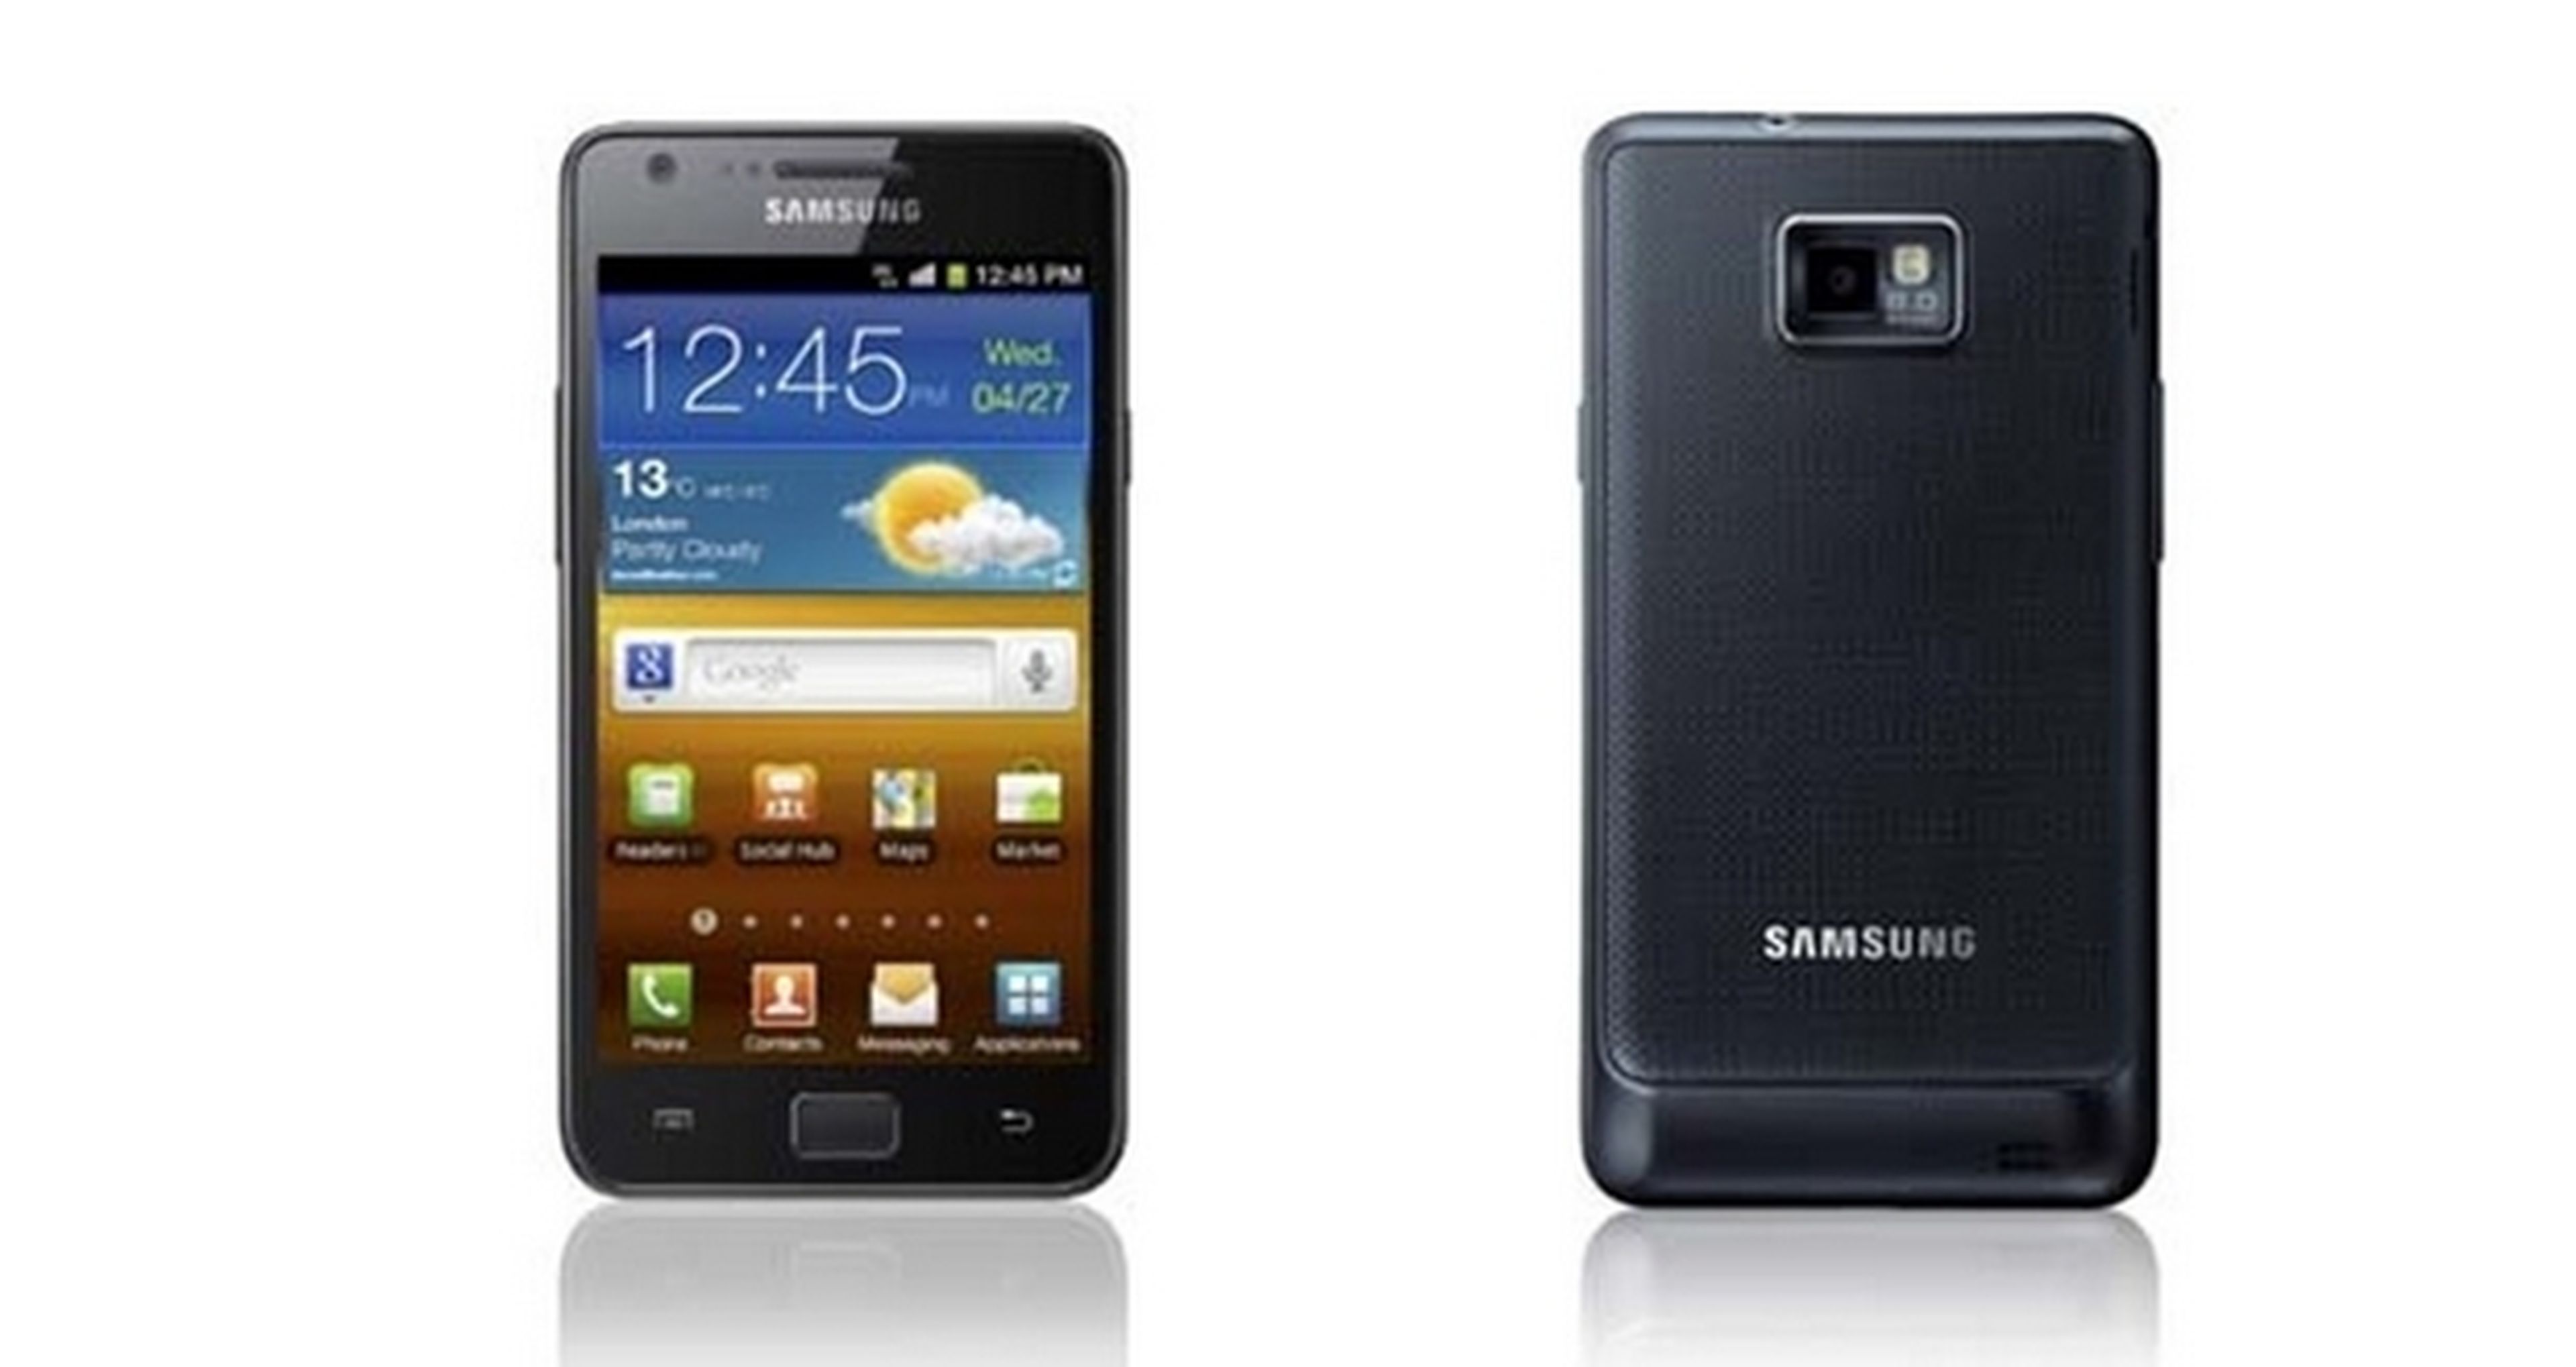 Samsung Galaxy S7, la evolución de la familia Galaxy S